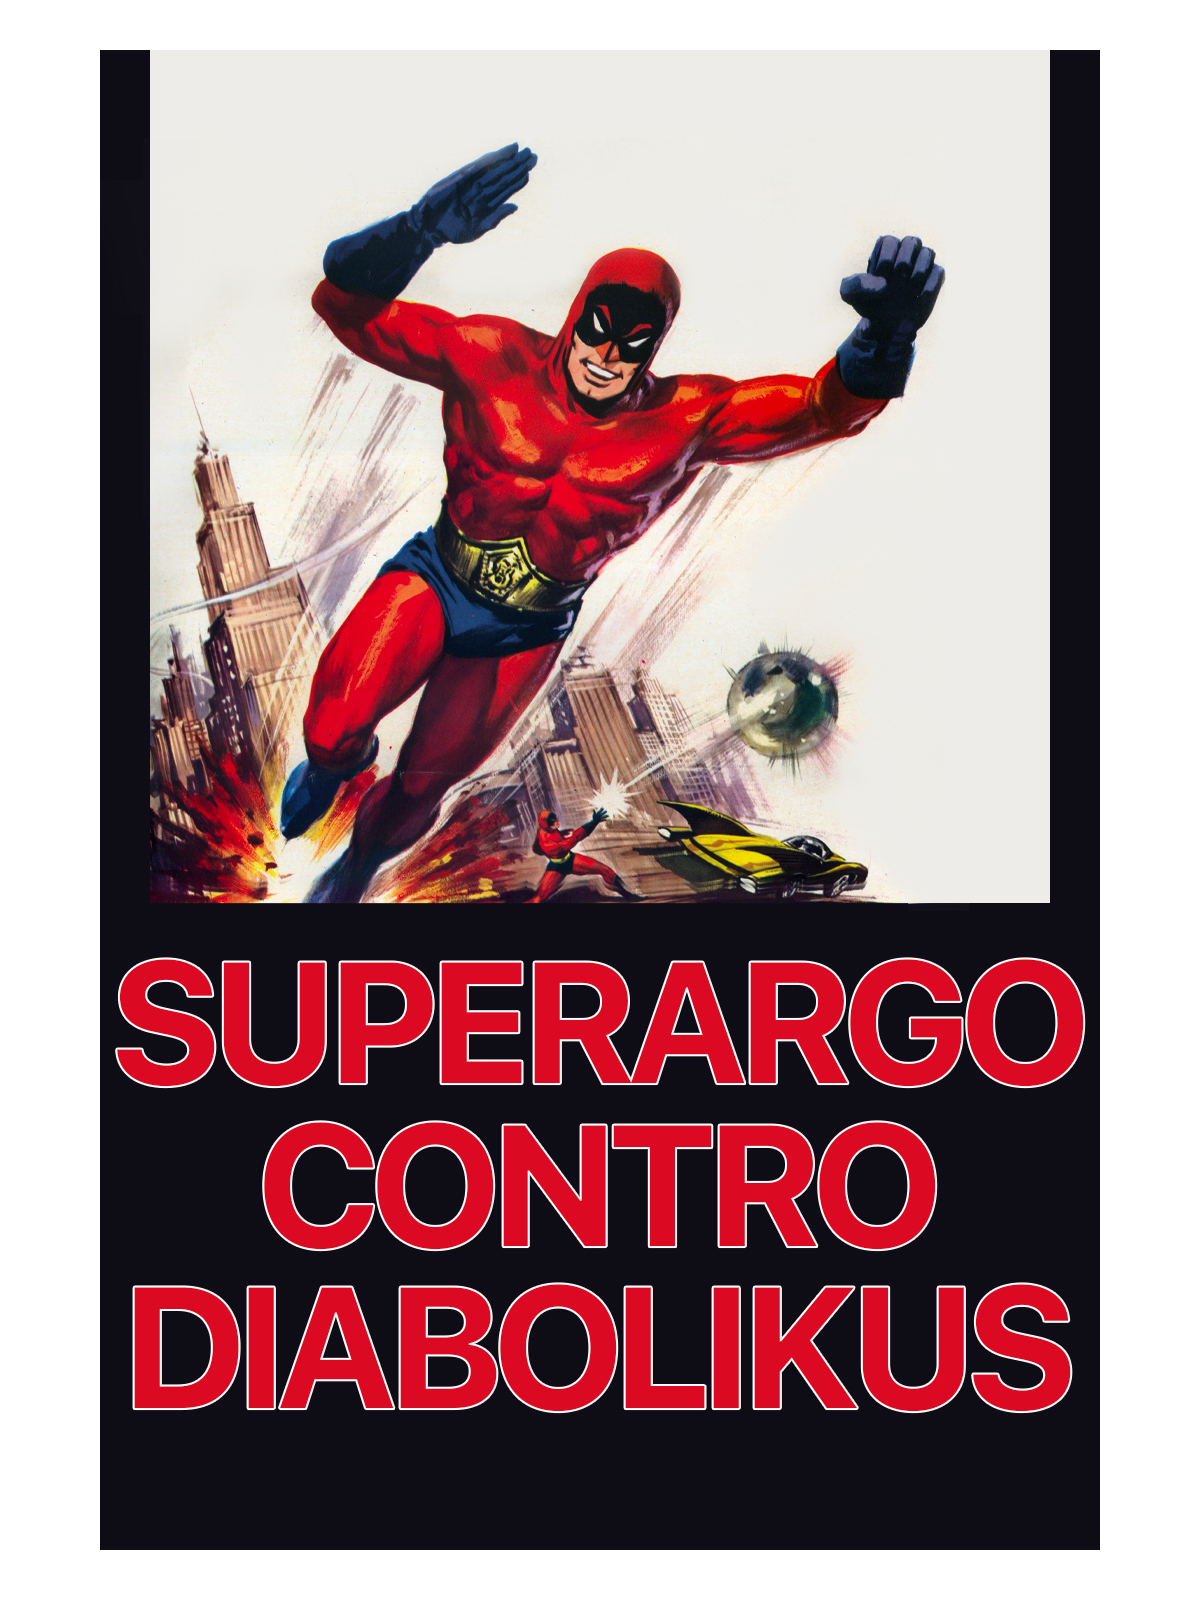 Superargo versus Diabolikus